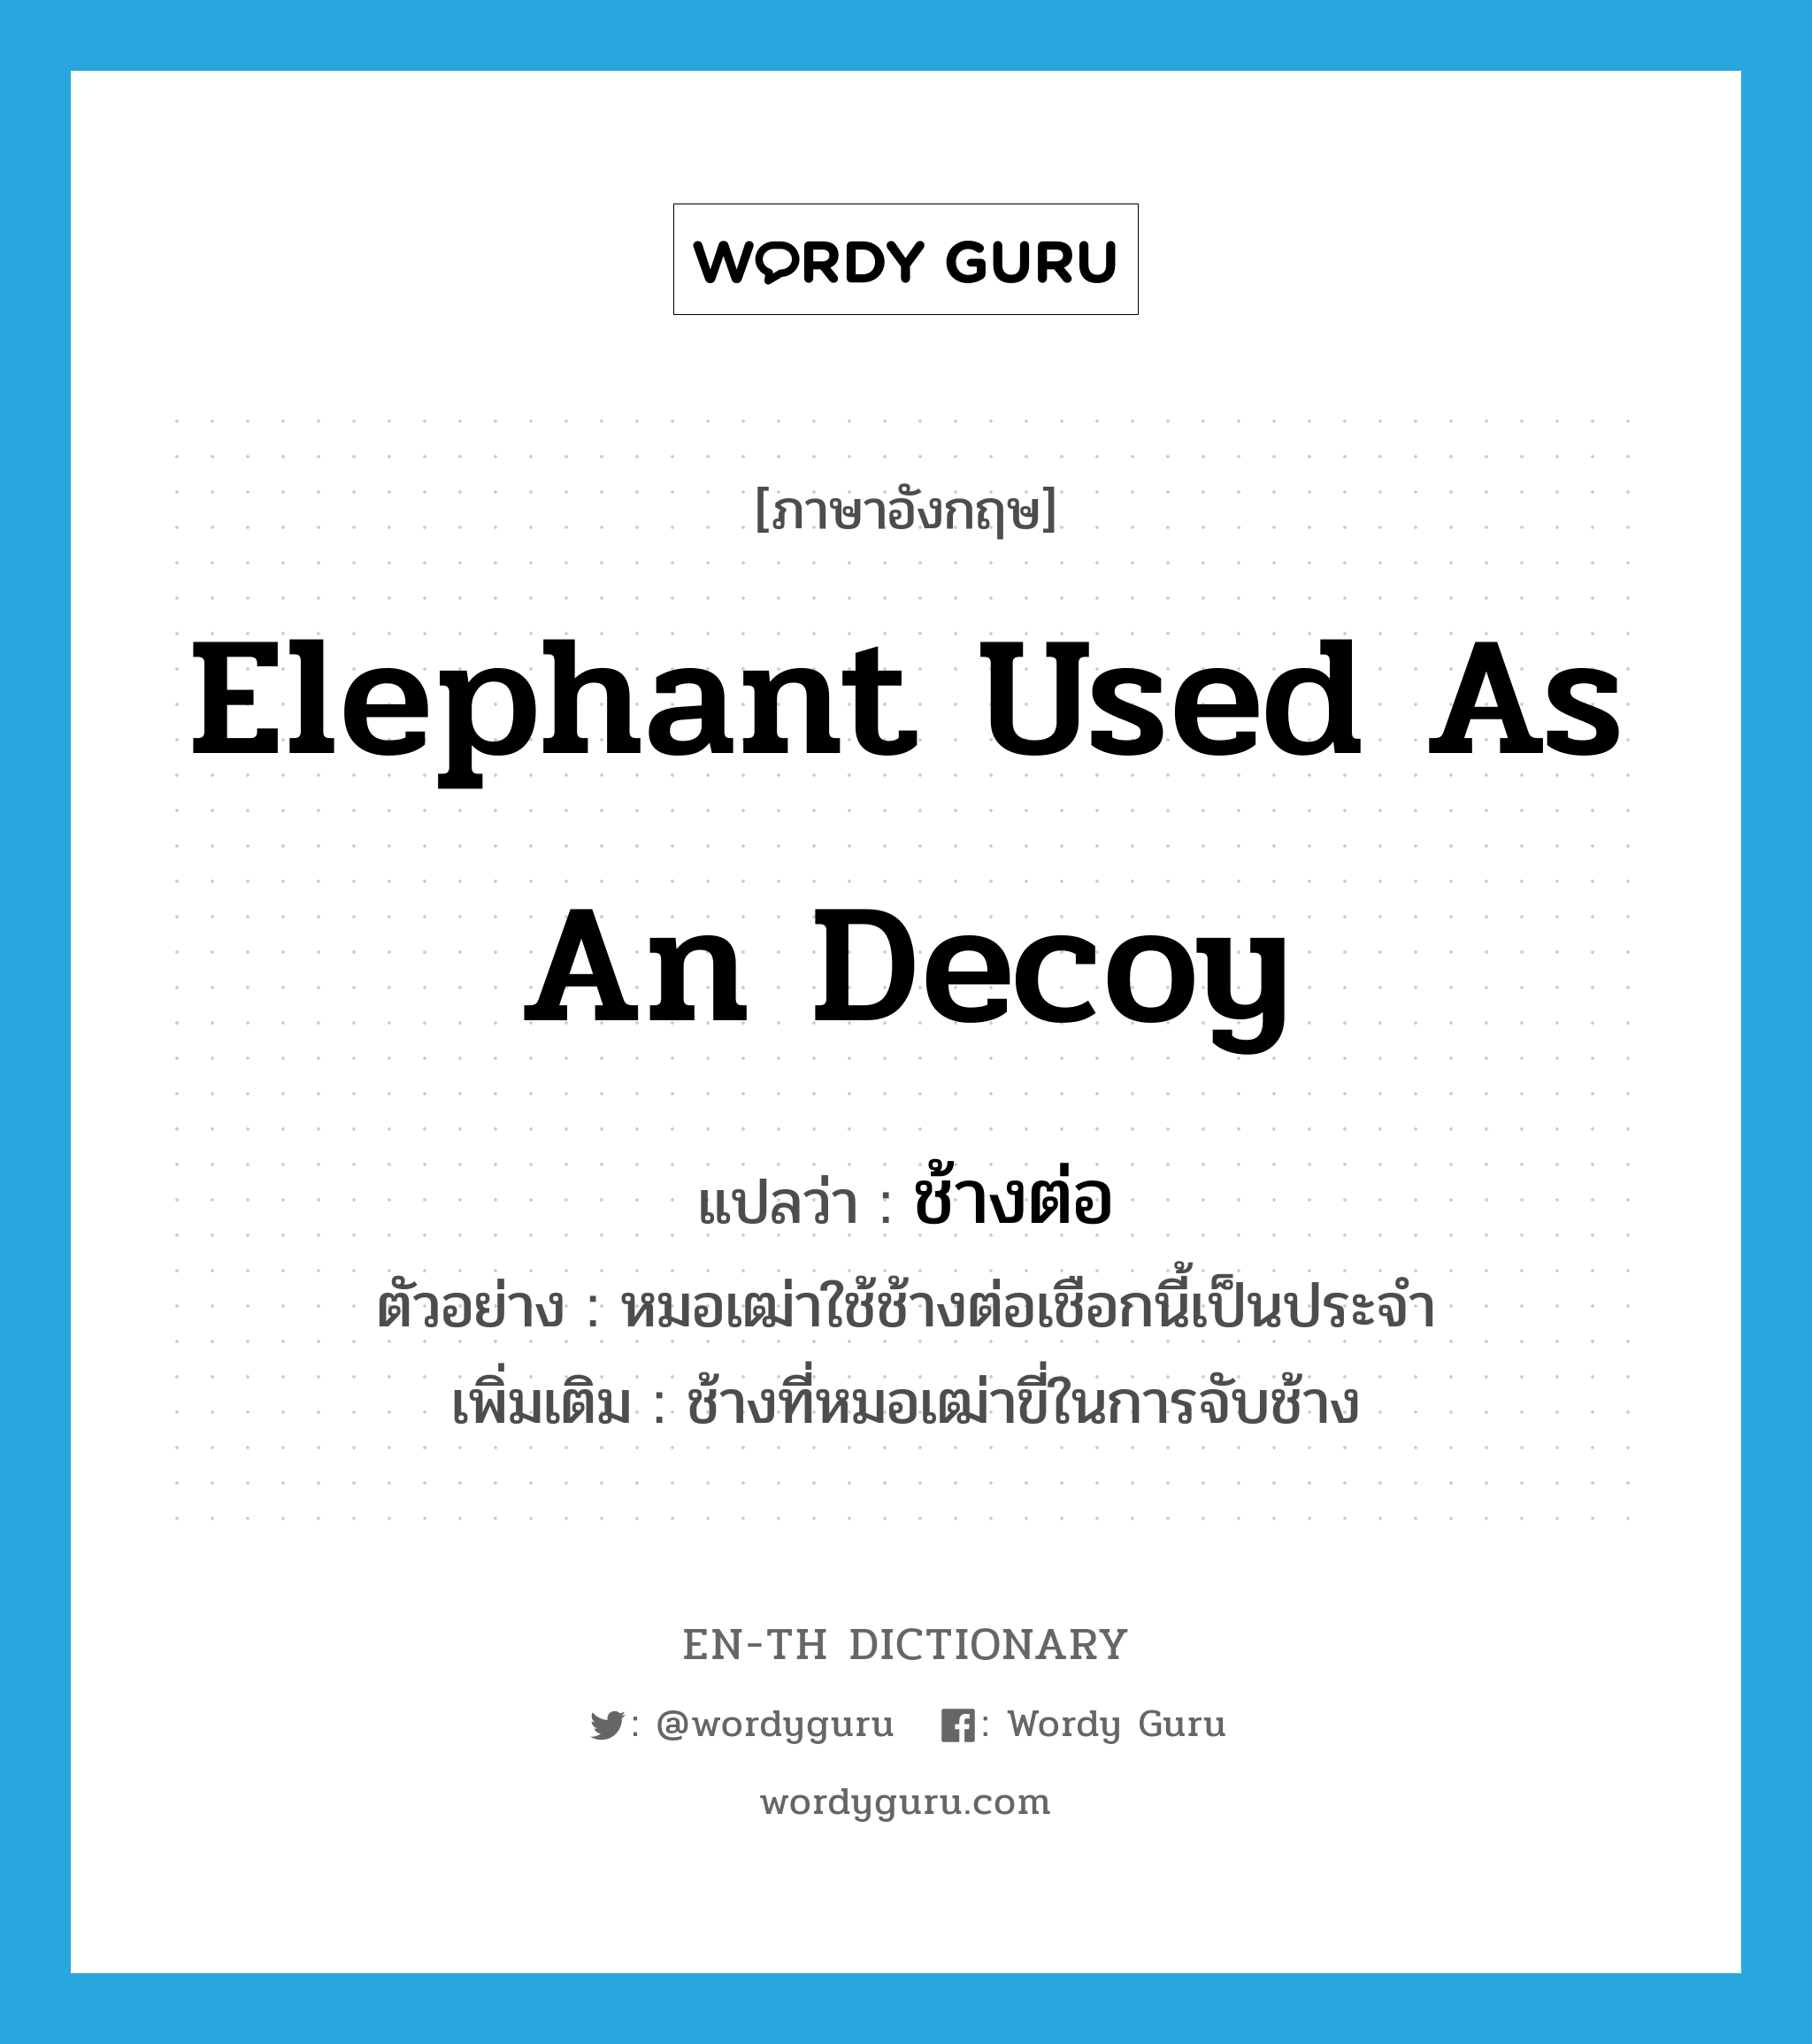 elephant used as an decoy แปลว่า?, คำศัพท์ภาษาอังกฤษ elephant used as an decoy แปลว่า ช้างต่อ ประเภท N ตัวอย่าง หมอเฒ่าใช้ช้างต่อเชือกนี้เป็นประจำ เพิ่มเติม ช้างที่หมอเฒ่าขี่ในการจับช้าง หมวด N